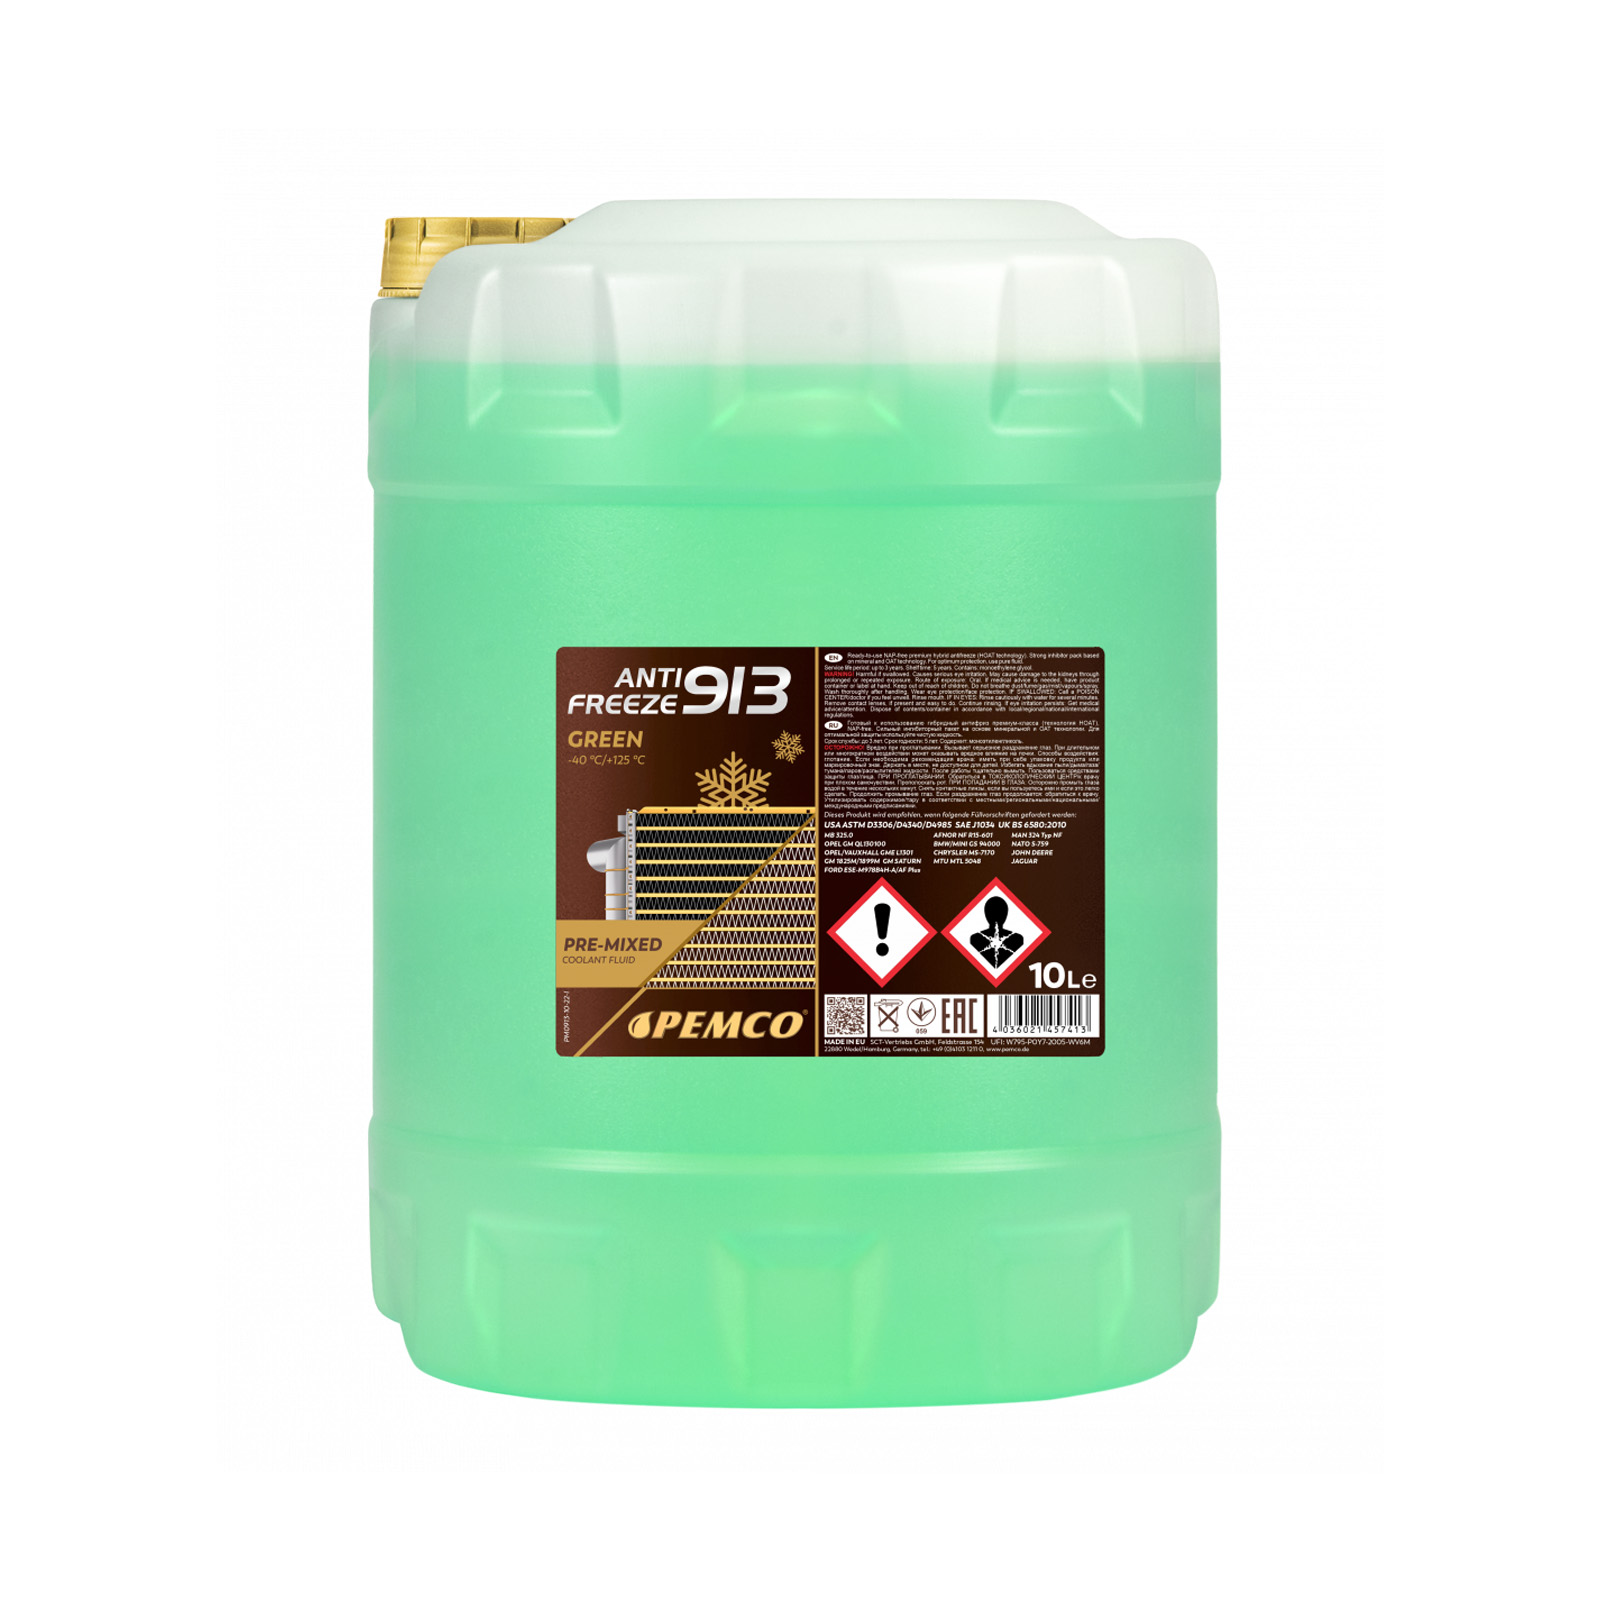 40 Liter PEMCO Antifreeze 913 Typ G13 Kühlerfrostschutz Fertiggemisch -40° grün